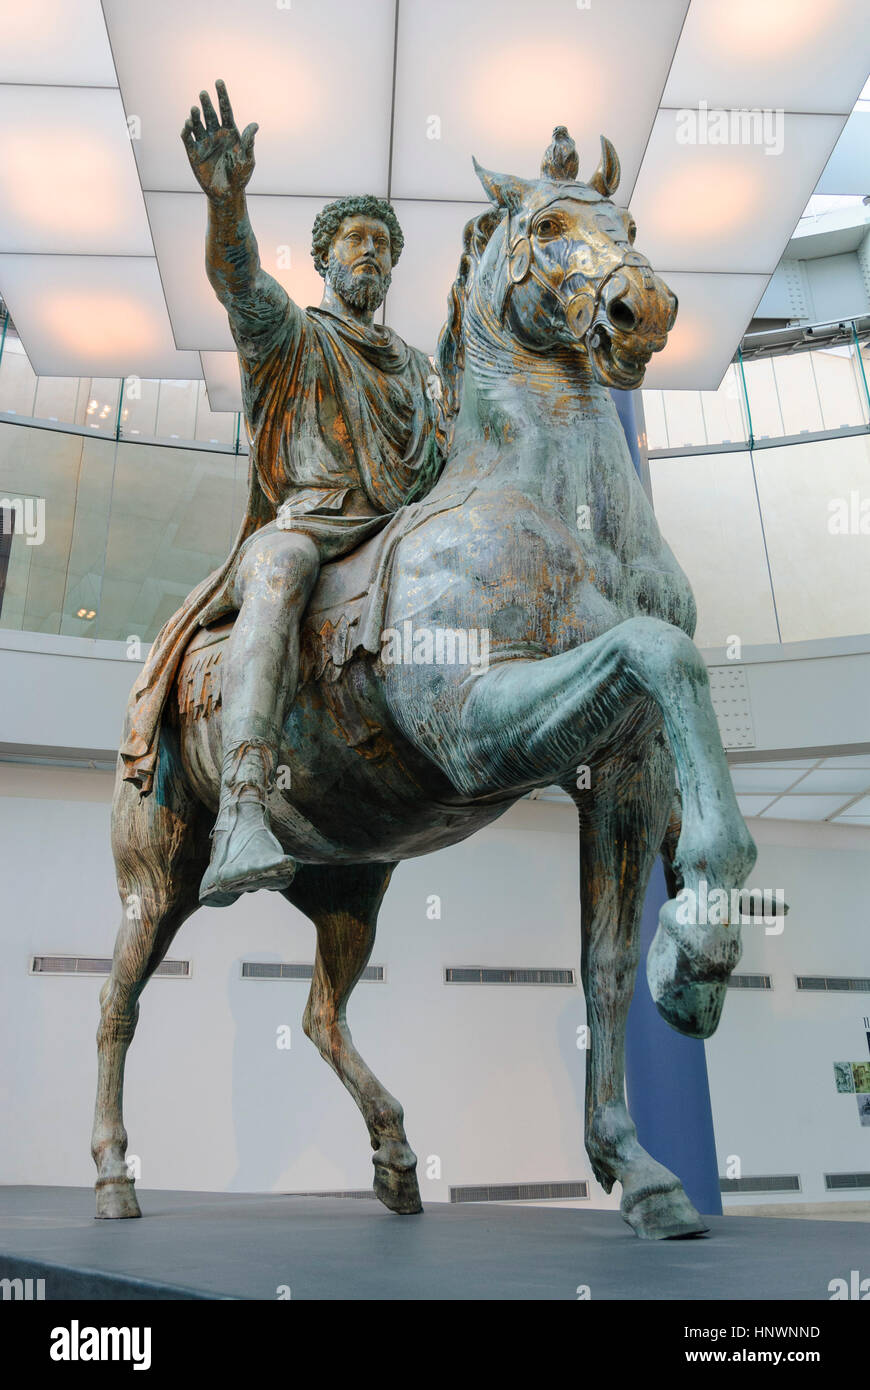 Roma. L'Italia. Statua equestre in bronzo (161-180 AD) di imperatore romano Marco Aurelio (121-180 AD), Museo Capitolino. Musei Capitolini. Foto Stock